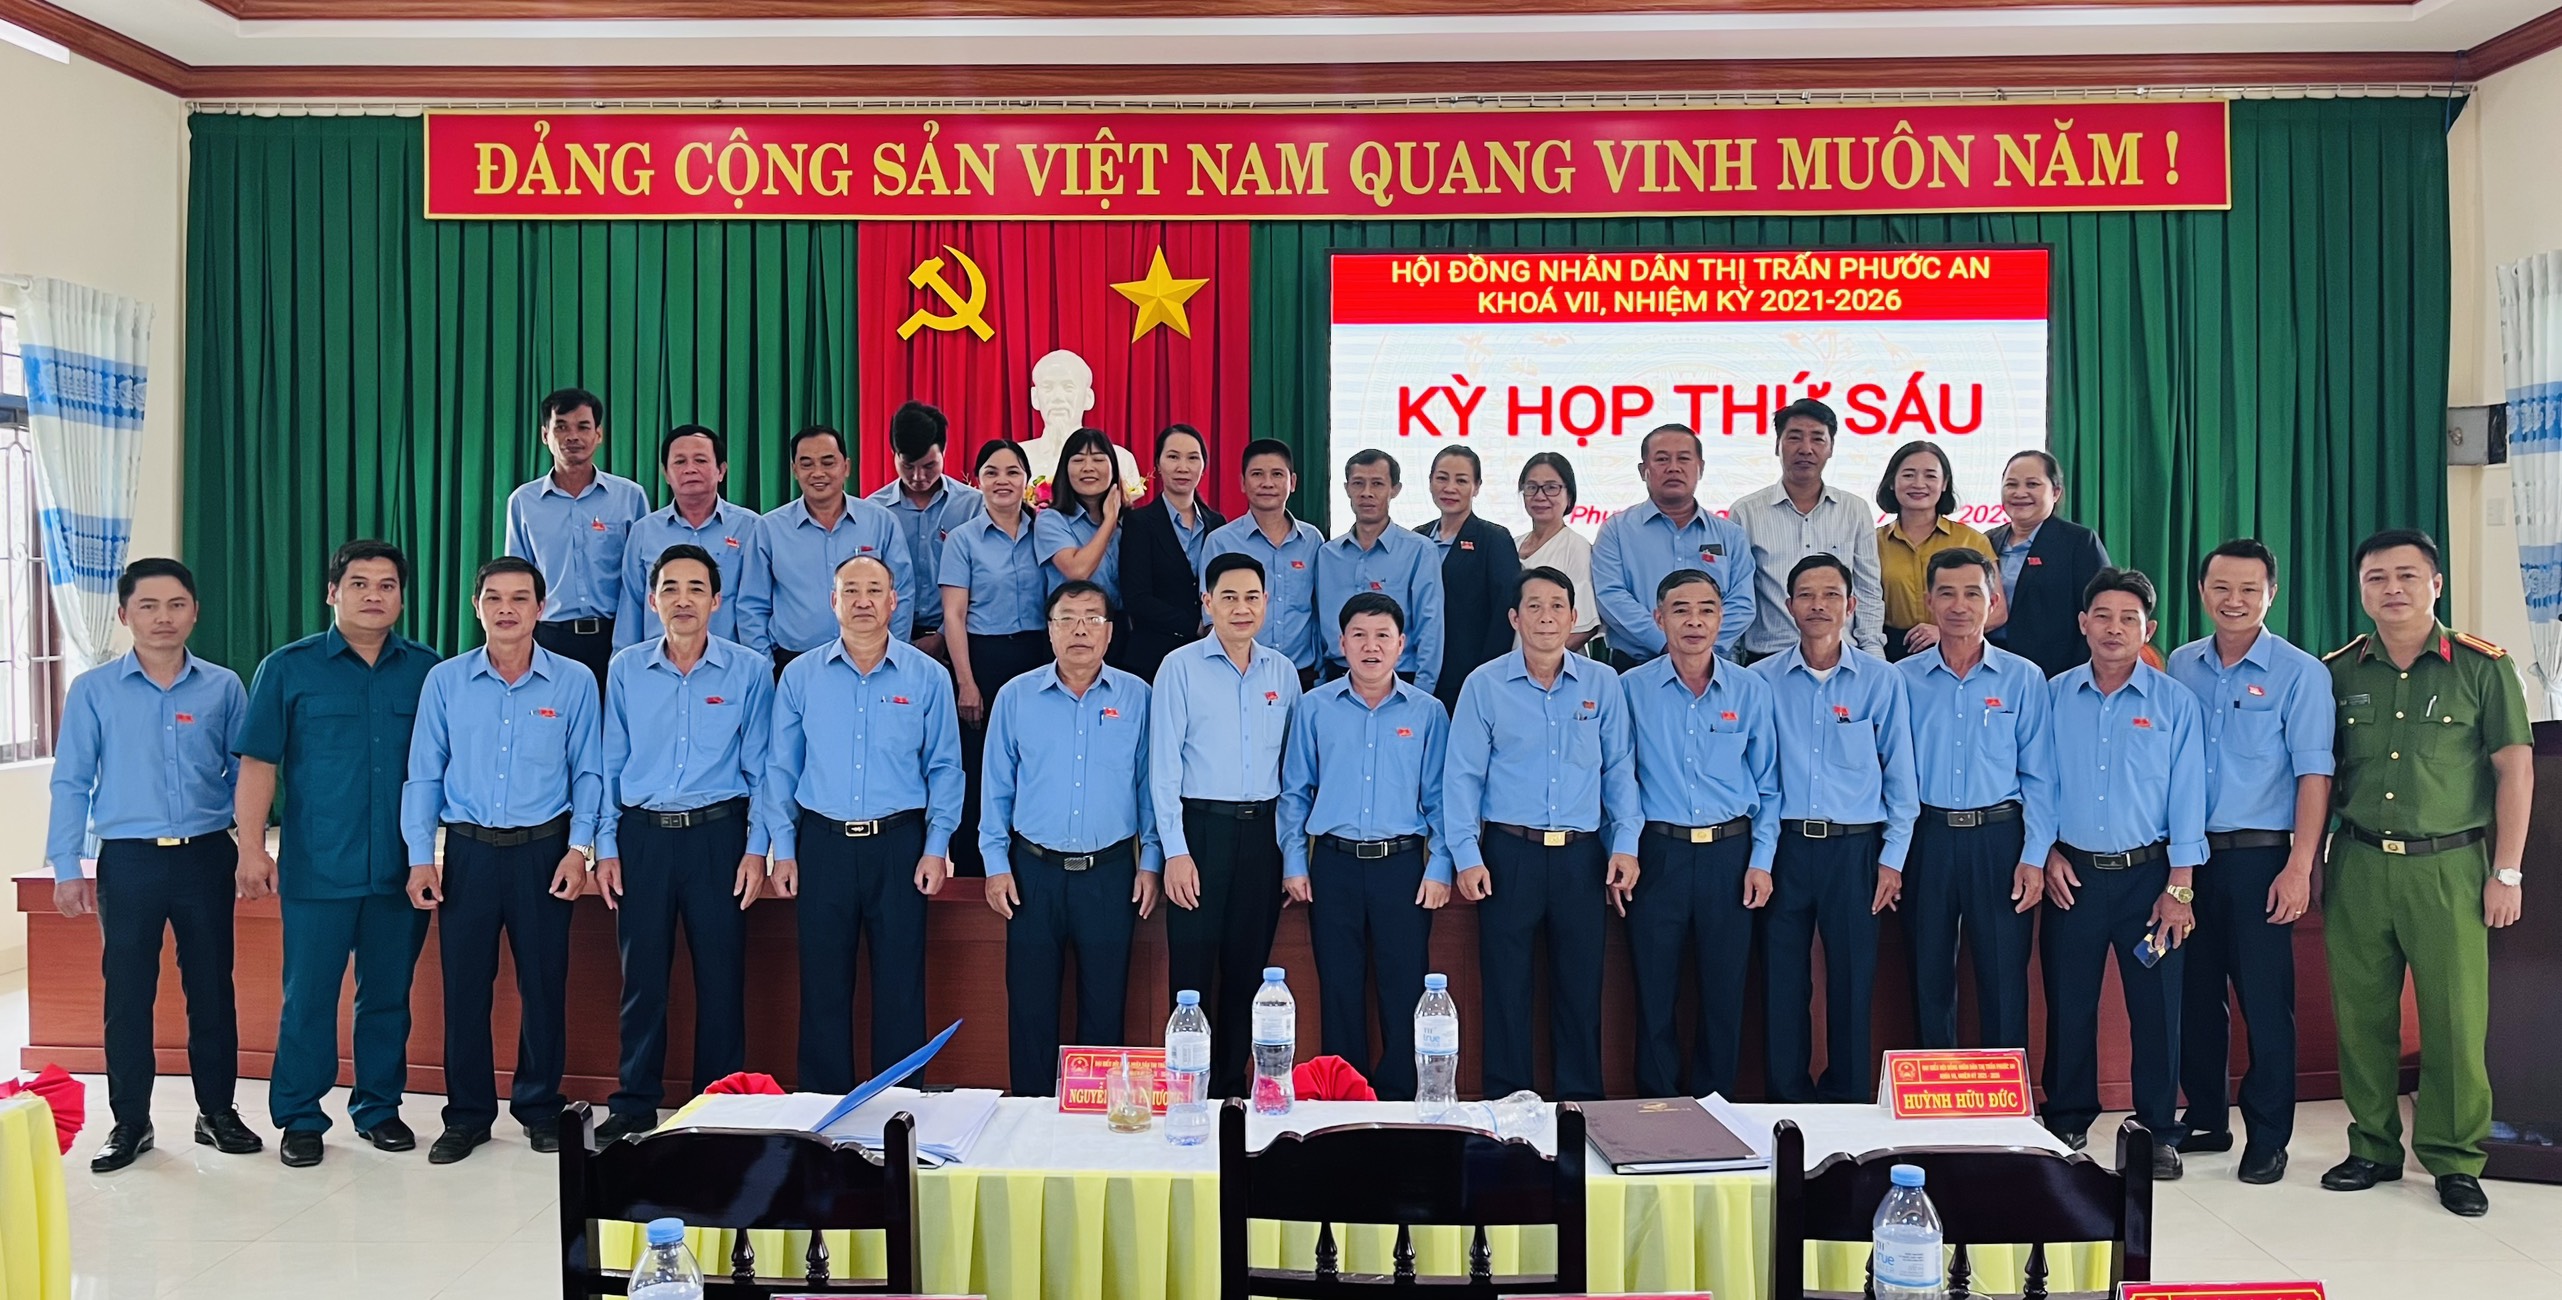 Hội Đồng Nhân Dân thị trấn Phước An  tổ chức kỳ họp thứ sáu khoá VII, nhiệm kỳ 2021 – 2026.